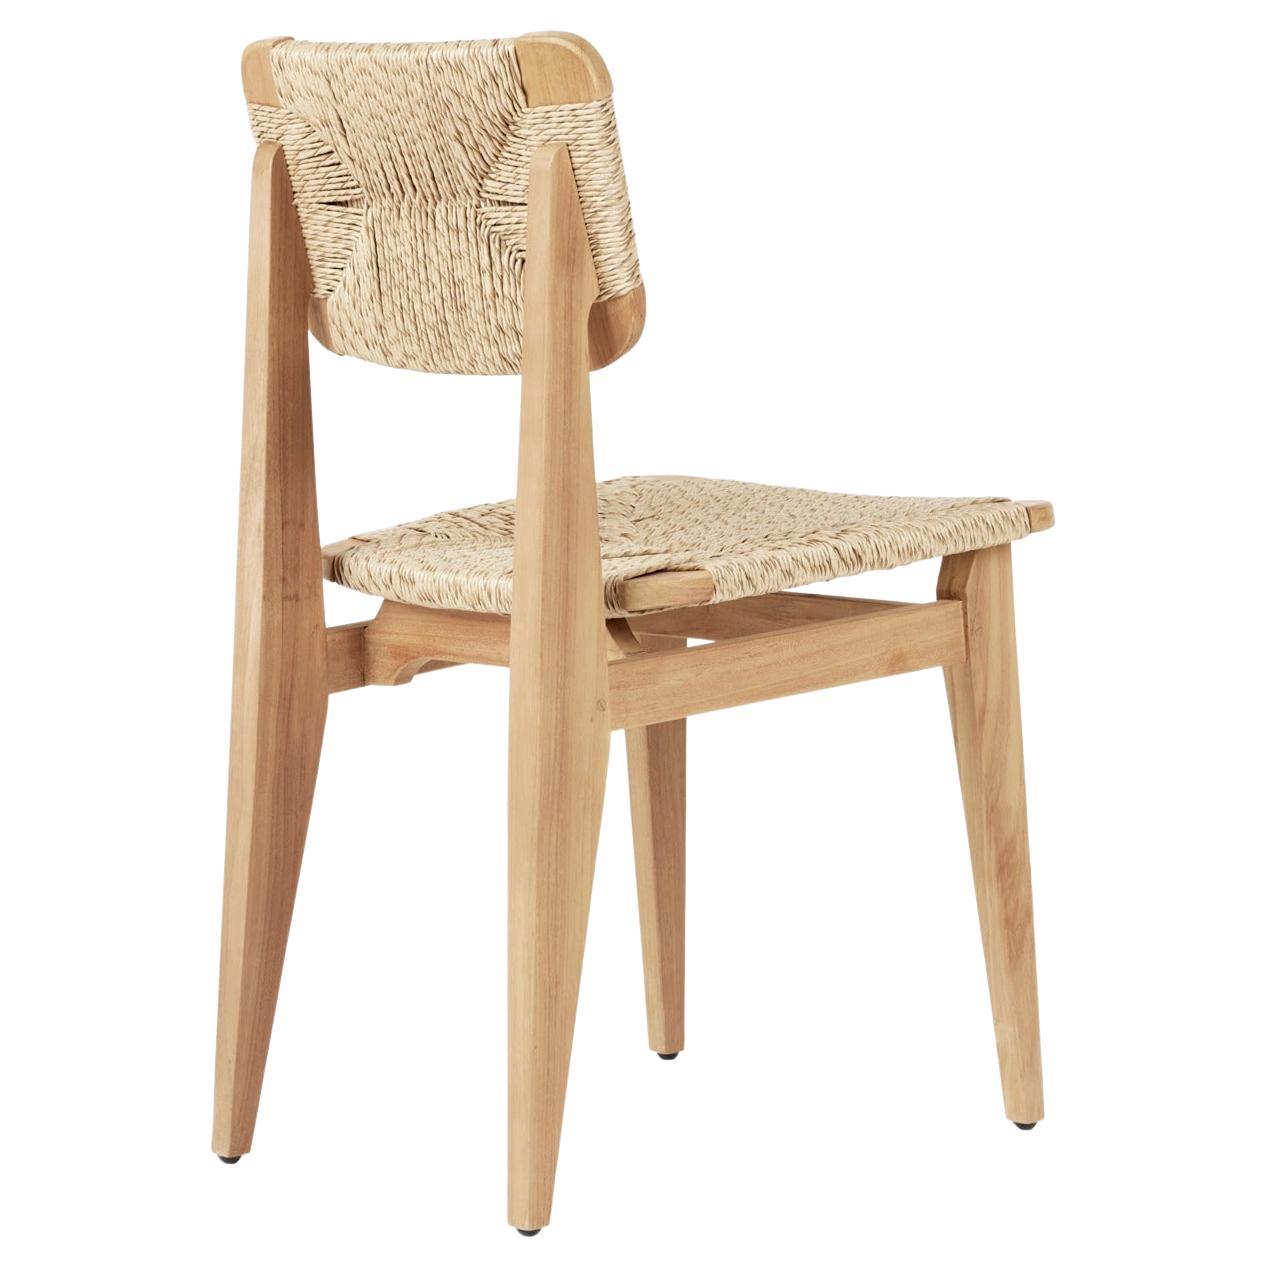 Der C-Chair ist sowohl in der Ergonomie als auch in der Materialität für den Außenbereich optimiert. Die Proportionen wurden so abgestimmt, dass der Komfort maximiert wird, und die Rahmen wurden sorgfältig mit traditionellen Tischlerarbeiten aus